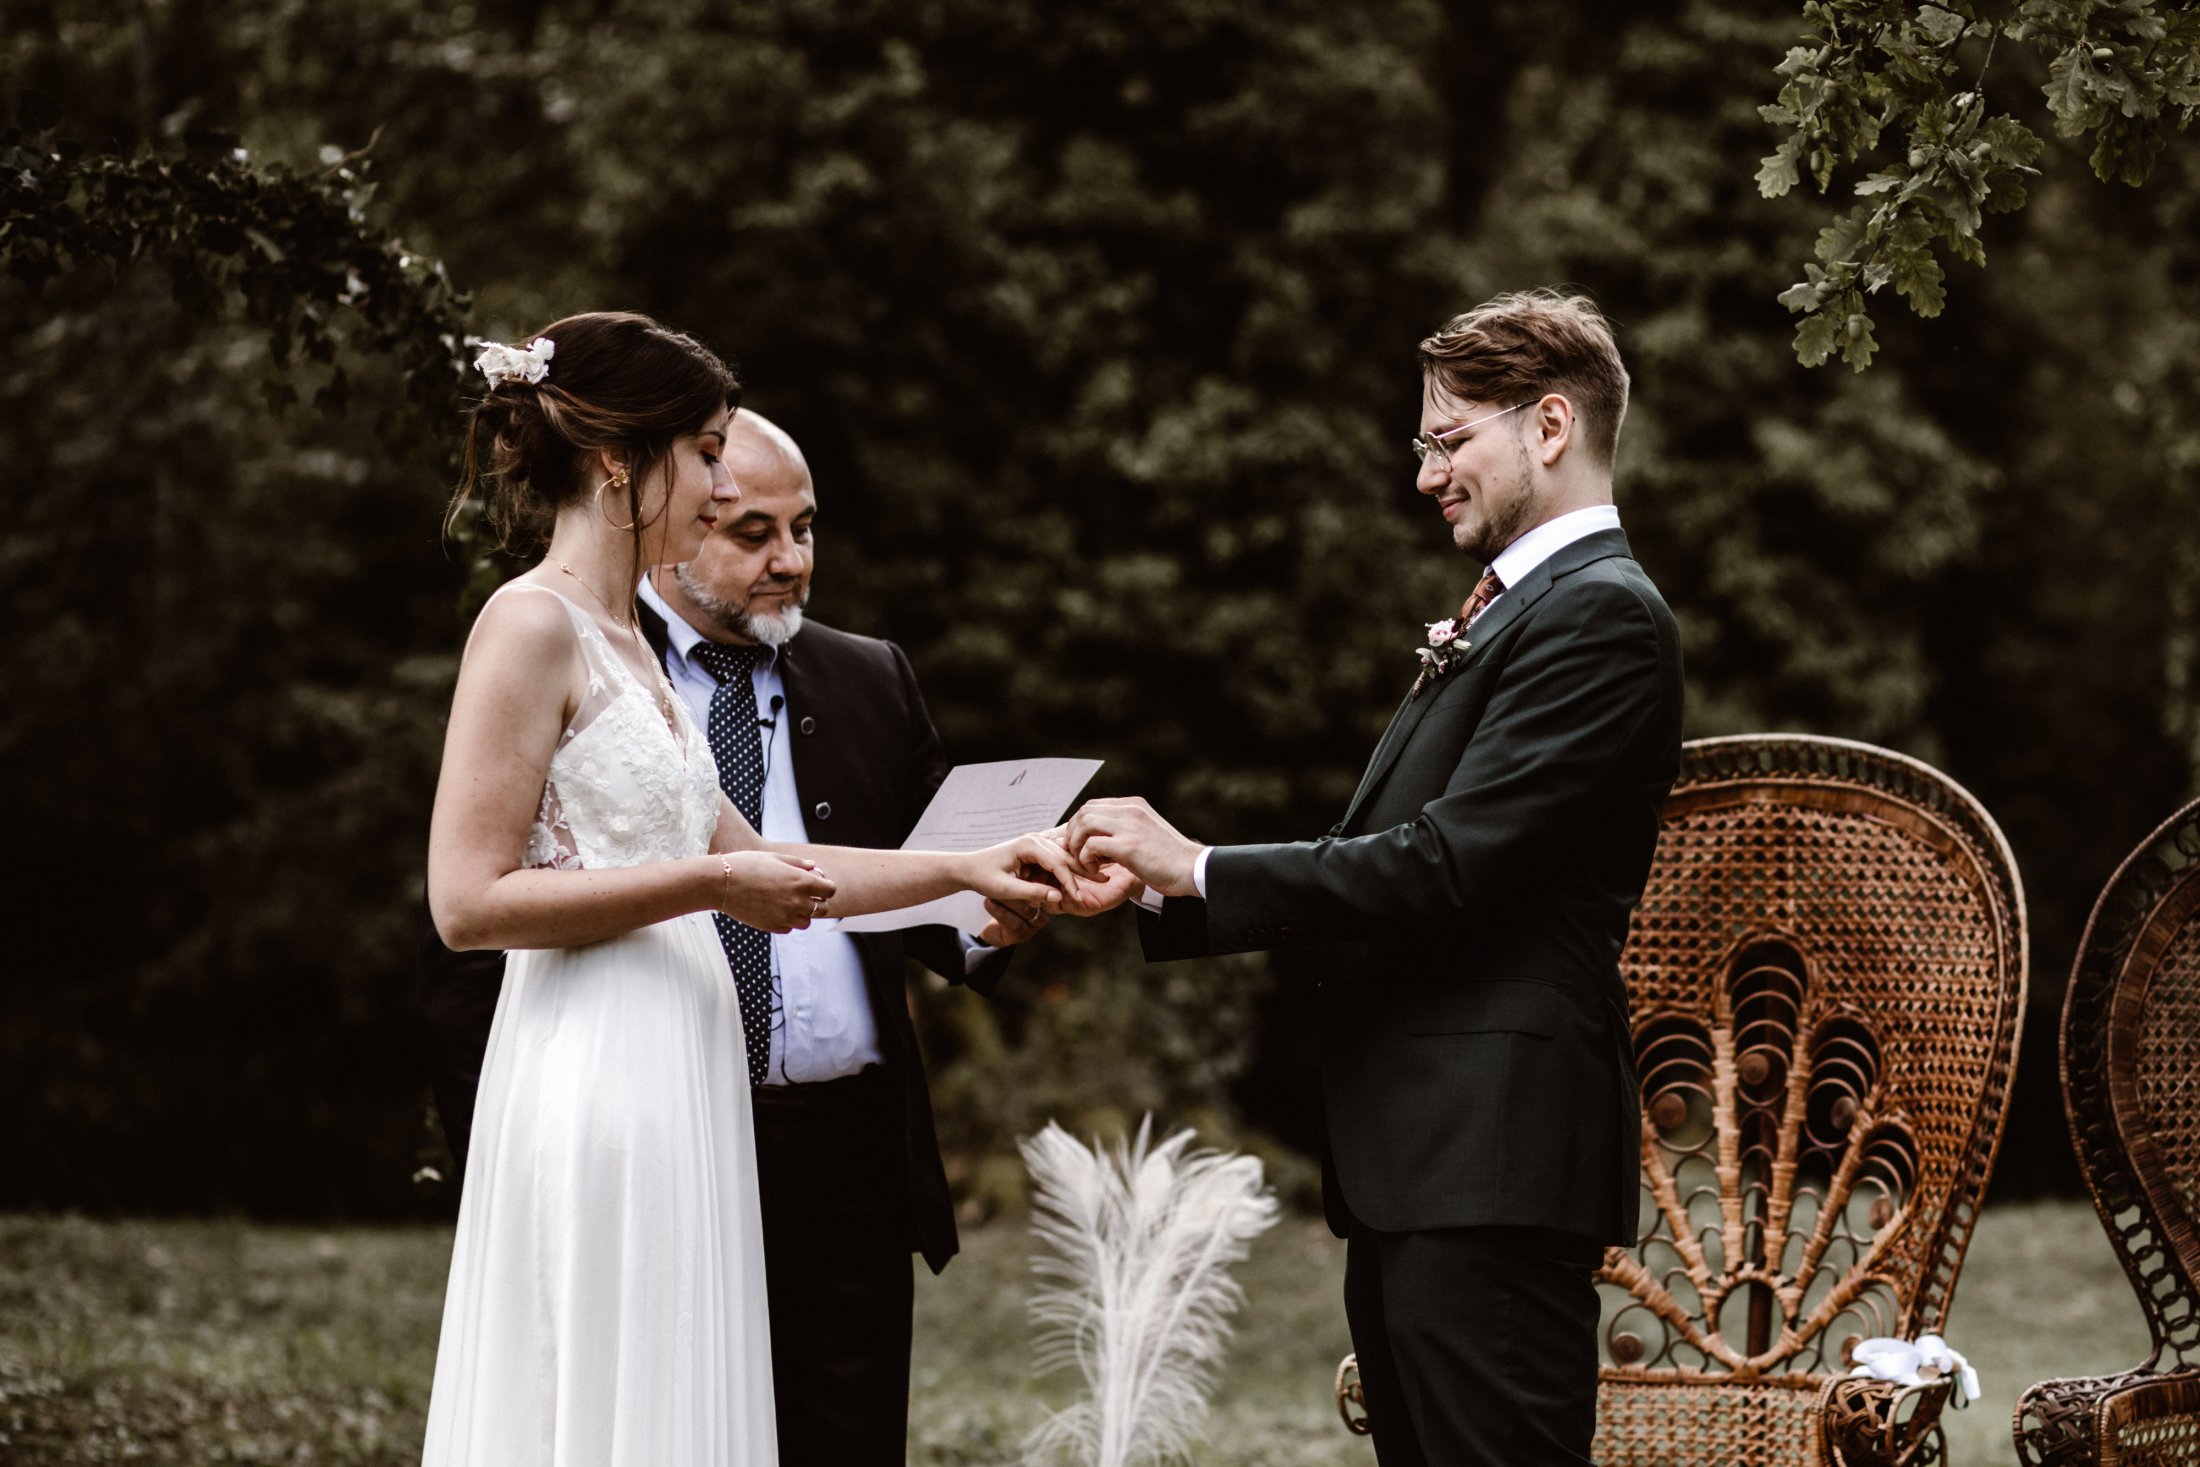 Mariage forêt : la cérémonie